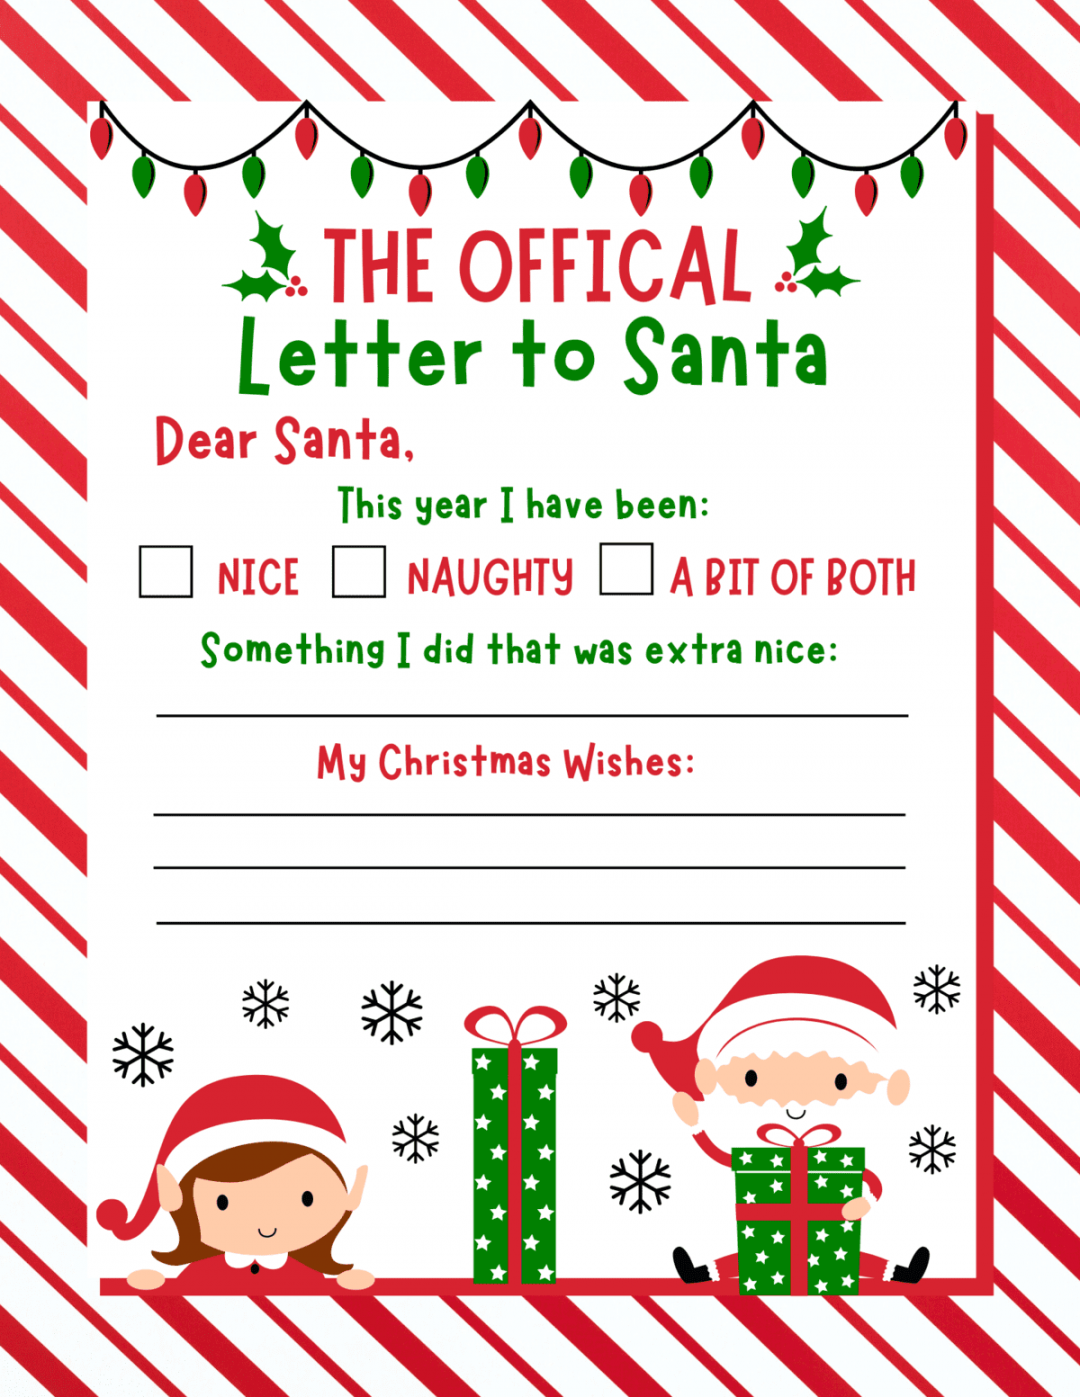 Free Printable Letters to Santa Templates - Prudent Penny Pincher - FREE Printables - Free Printable Letters To Santa